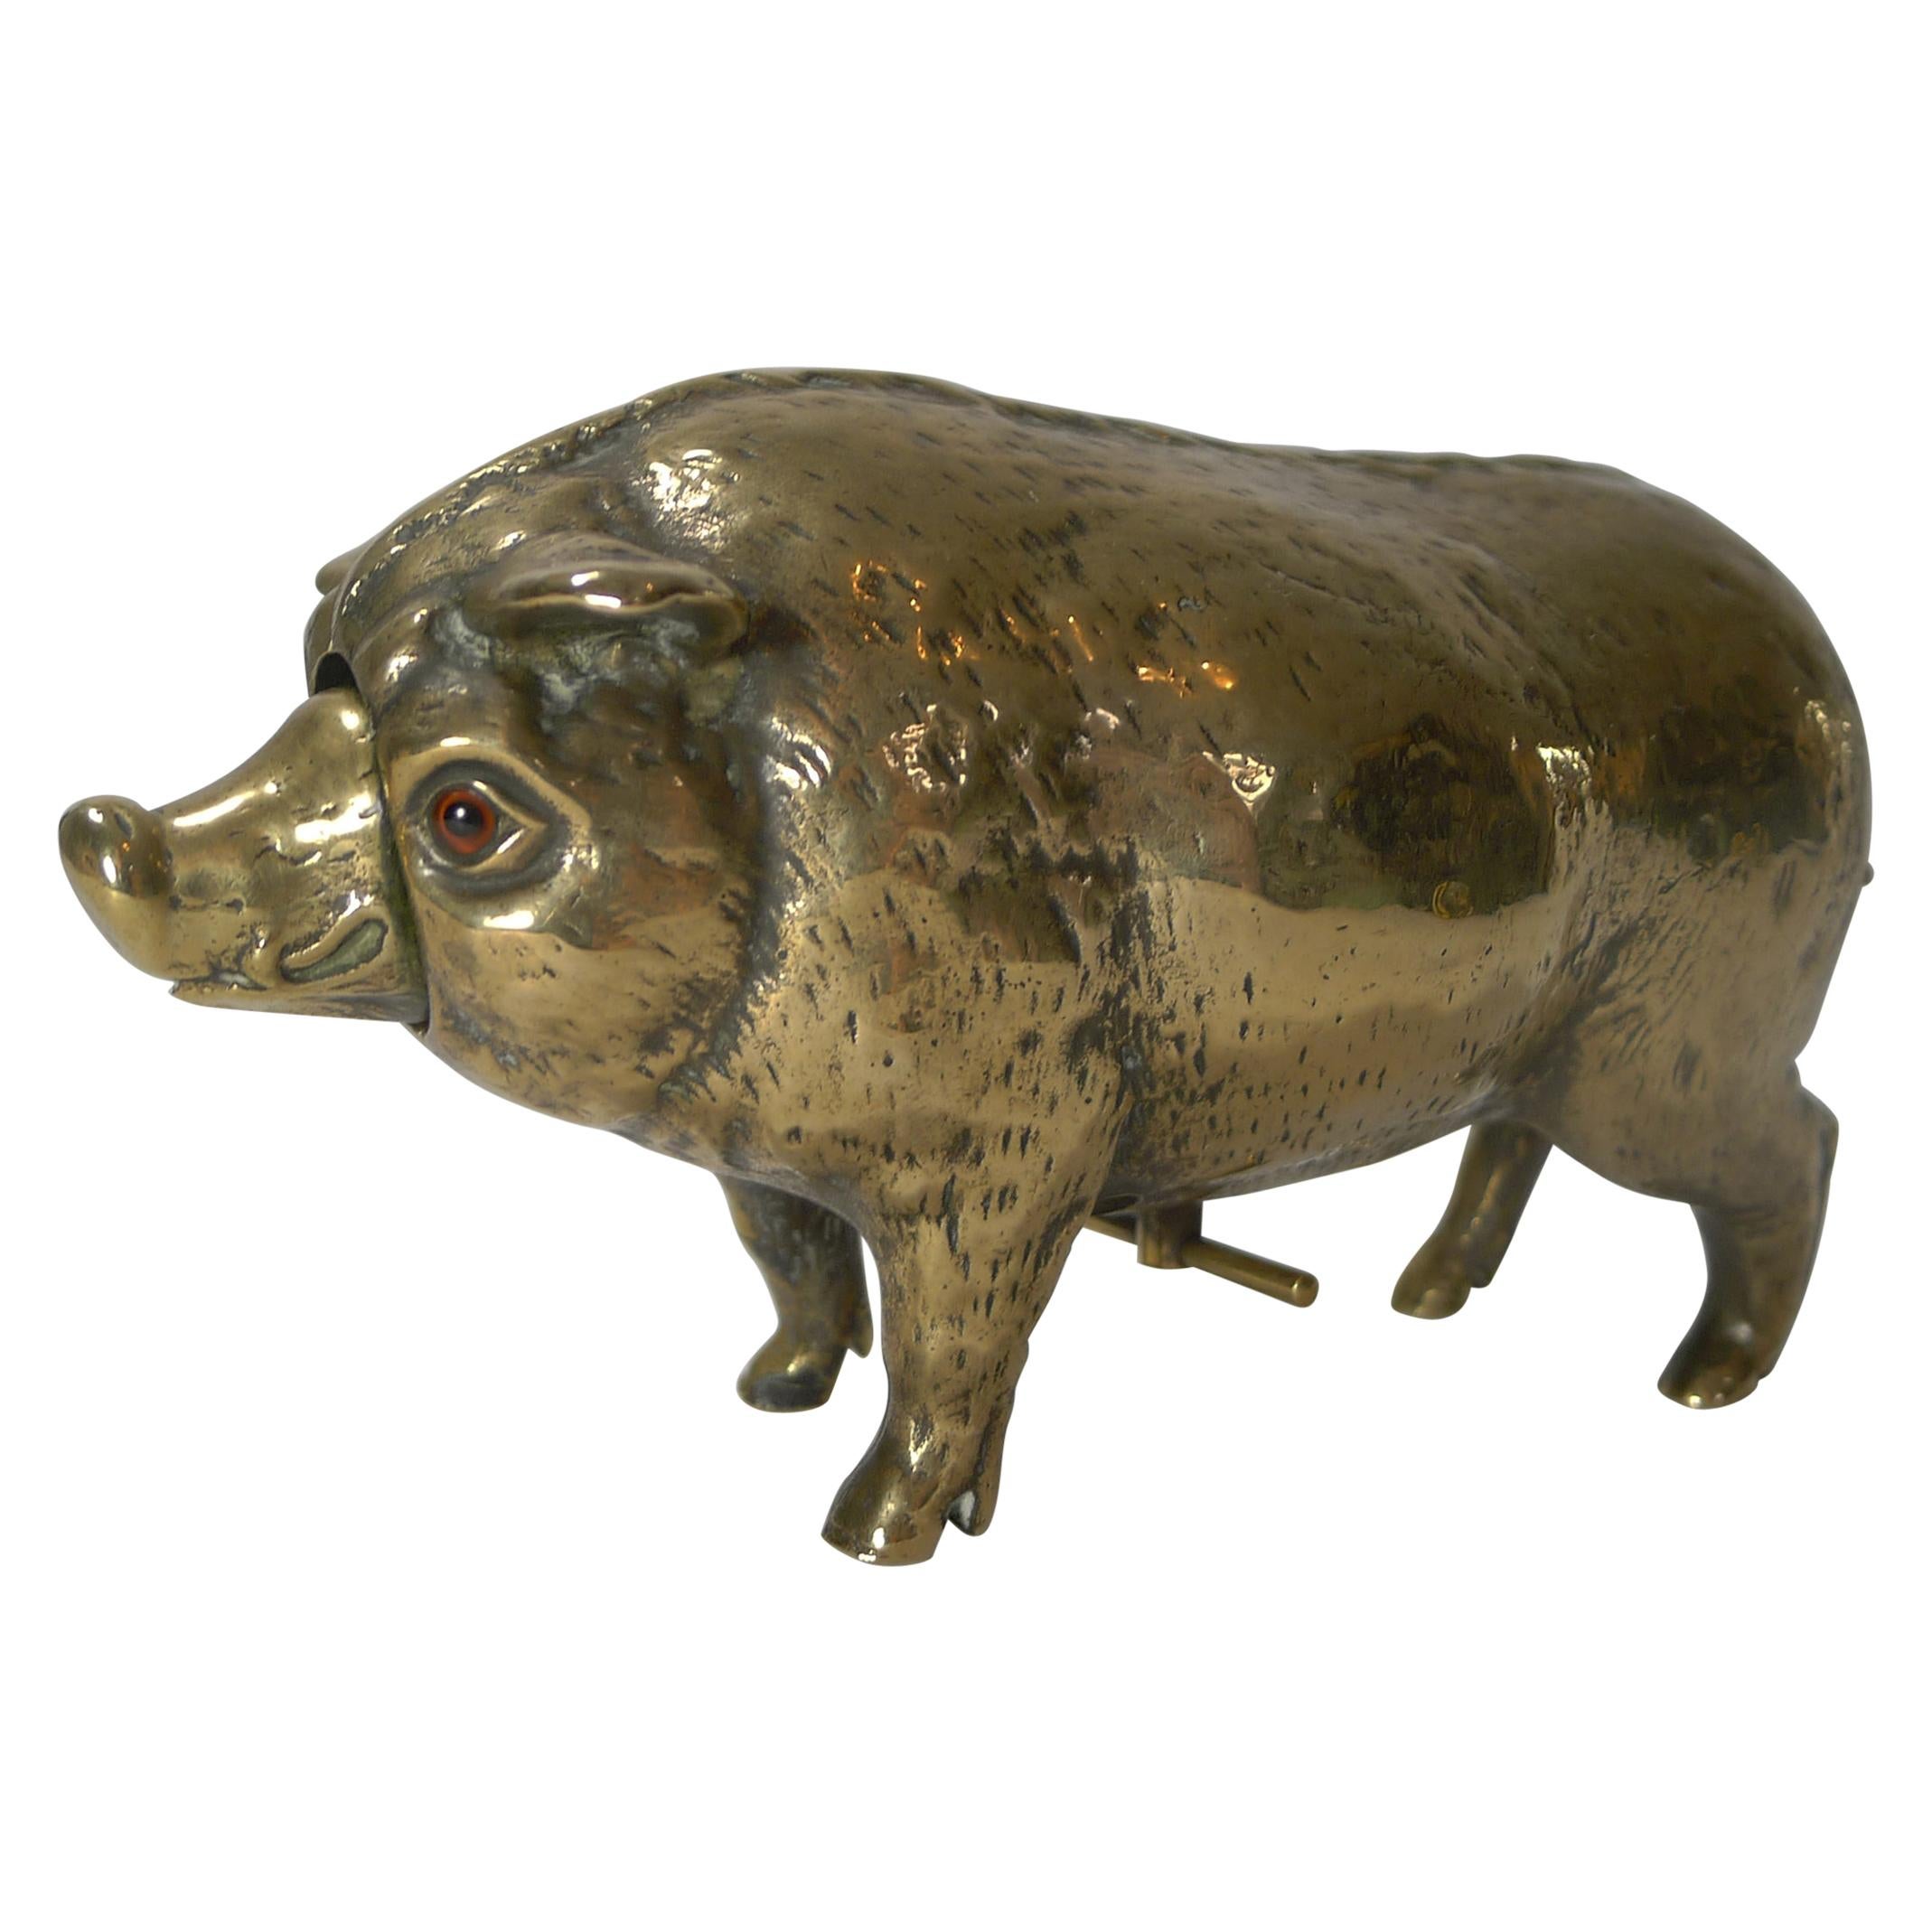 Antique Cast Brass or Polished Bronze Novelty Mechanical Desk Bell, Pig